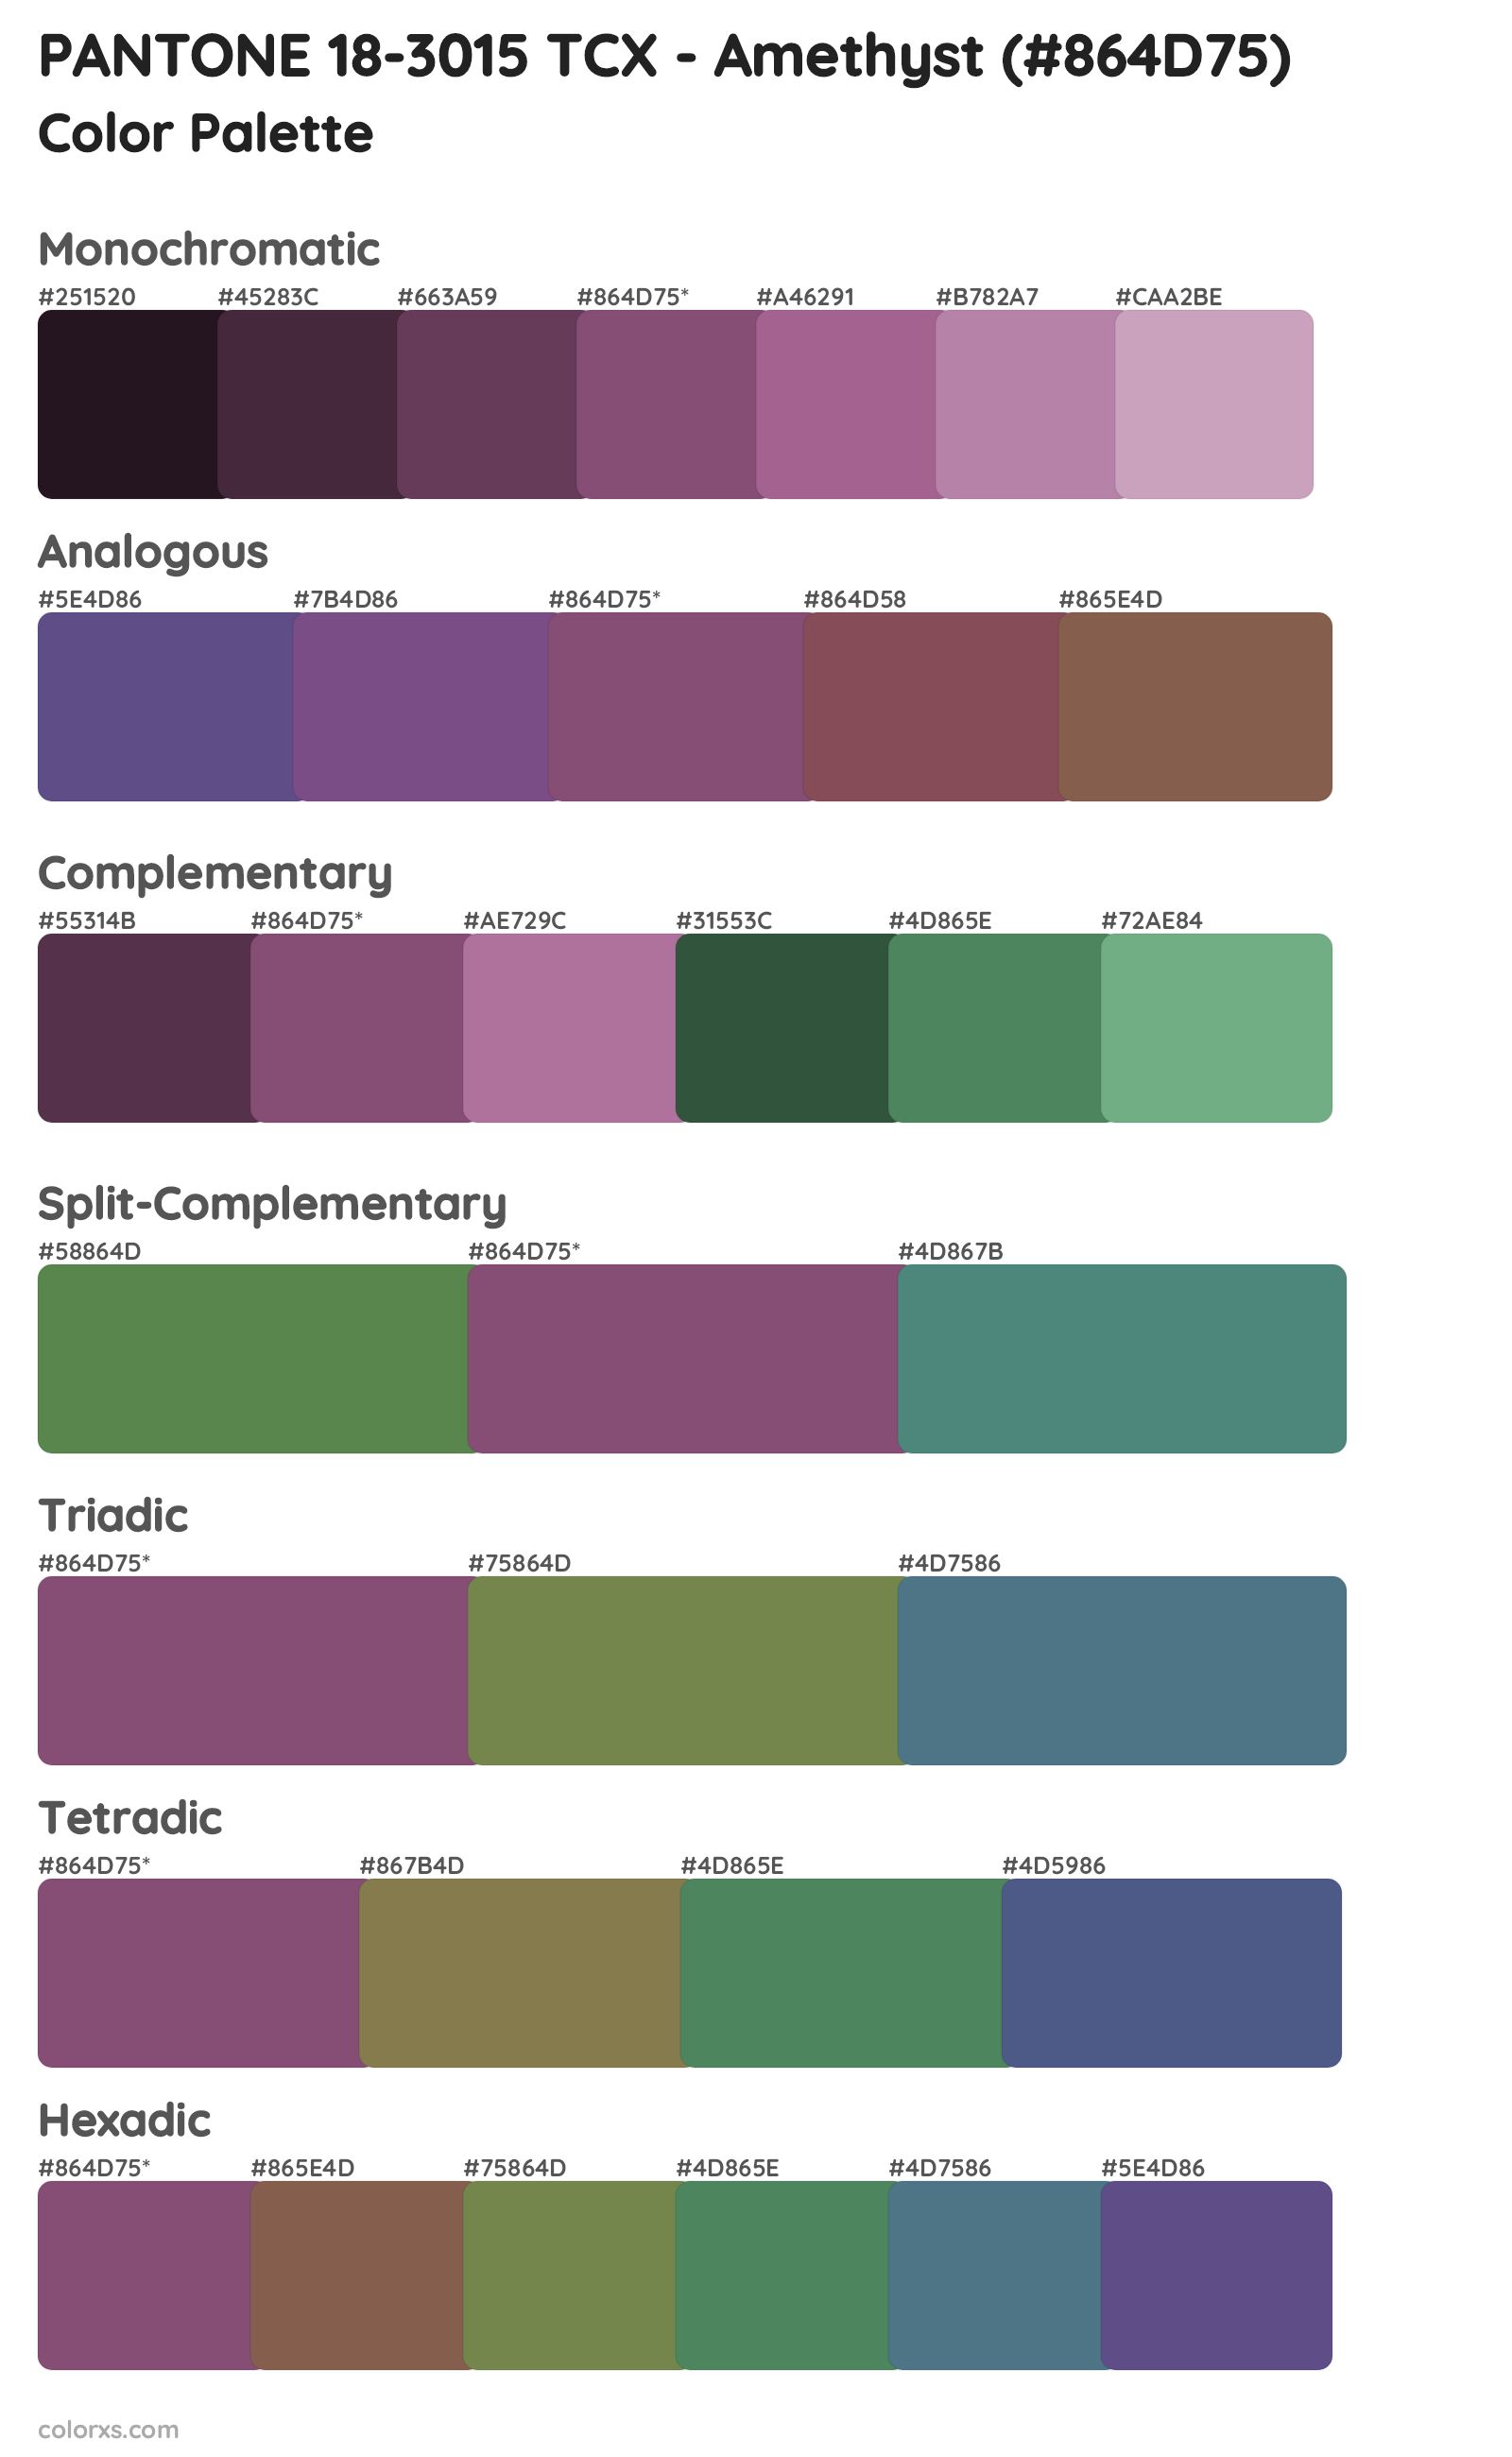 PANTONE 18-3015 TCX - Amethyst Color Scheme Palettes